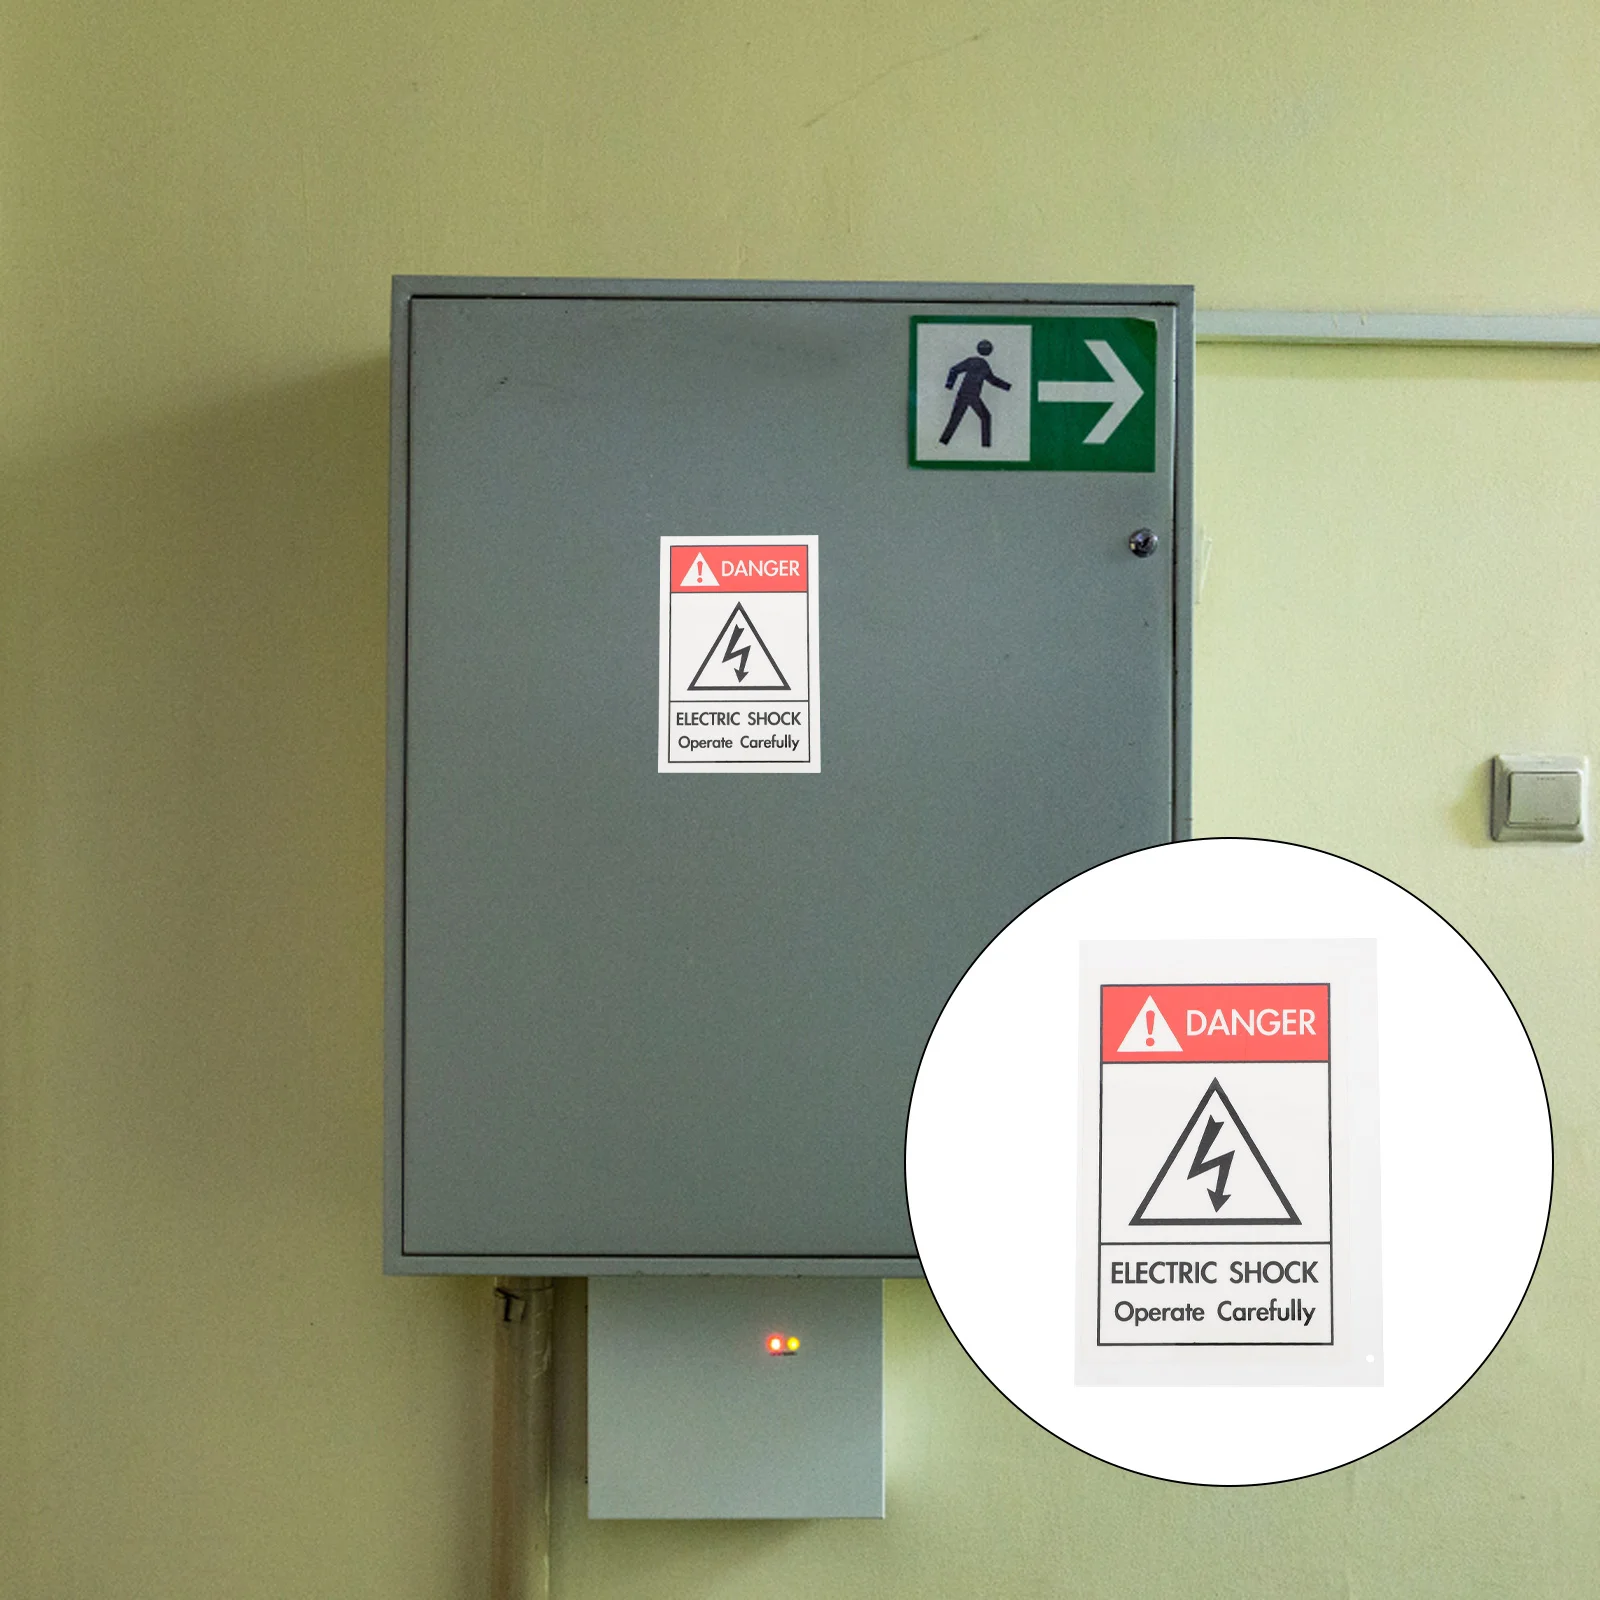 

Оборудование, знак электрошока, наклейка, этикетка для предупреждения о электрошоке, предупреждение о опасности электрошока